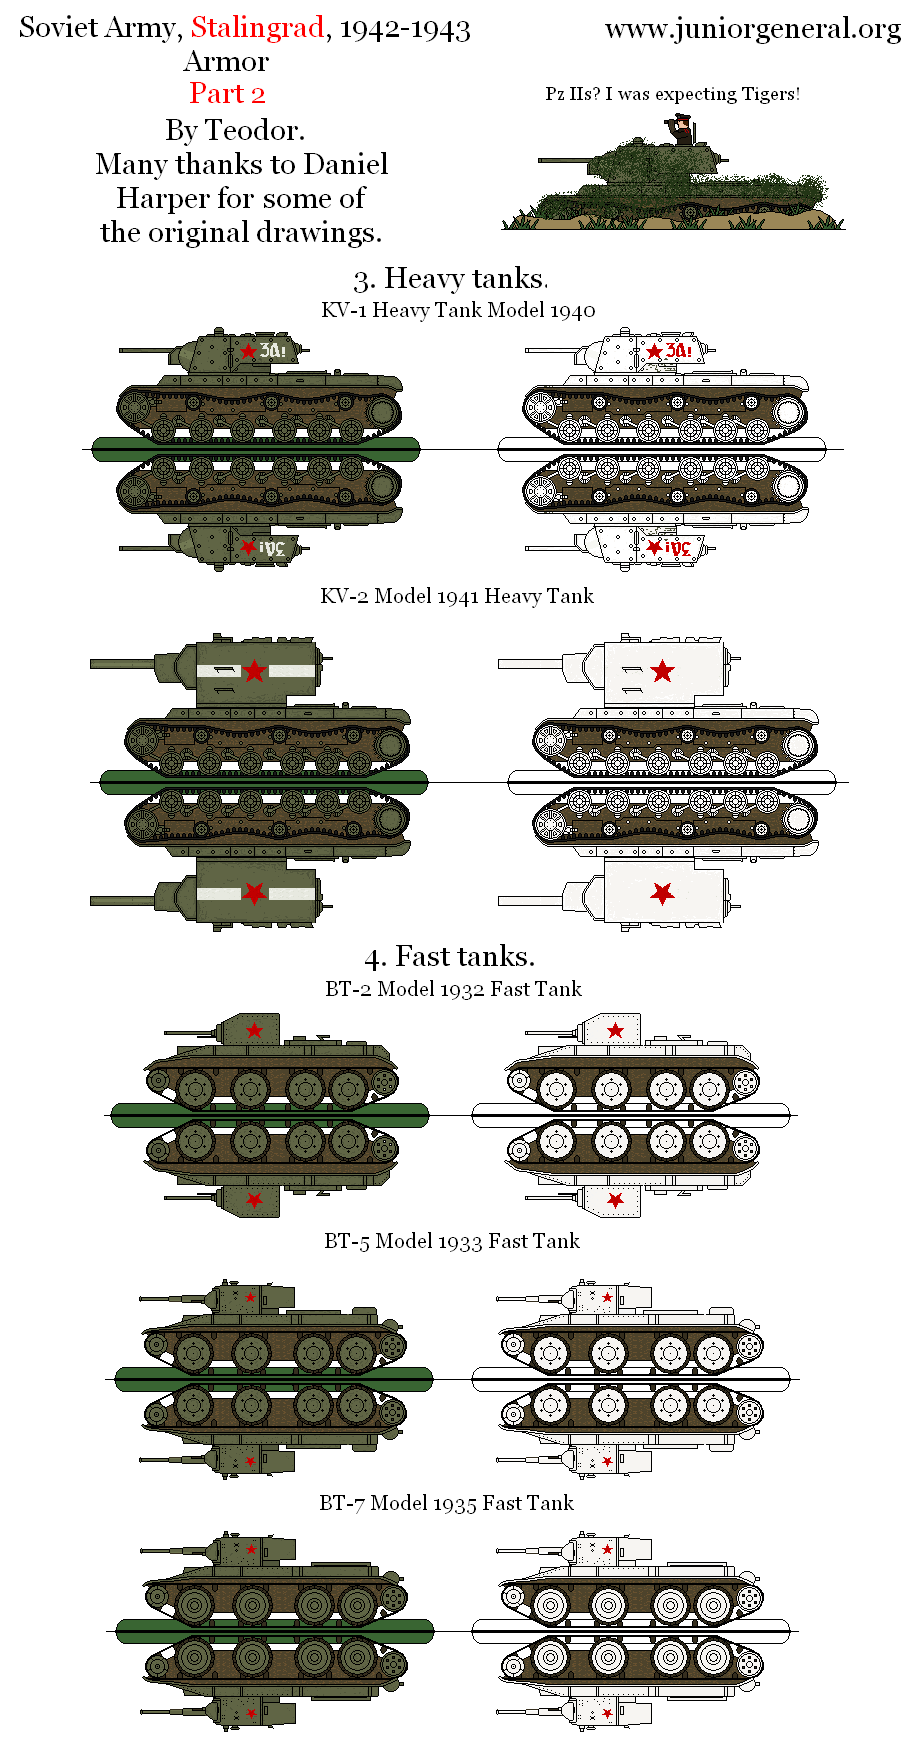 Armor (Stalingrad) 2